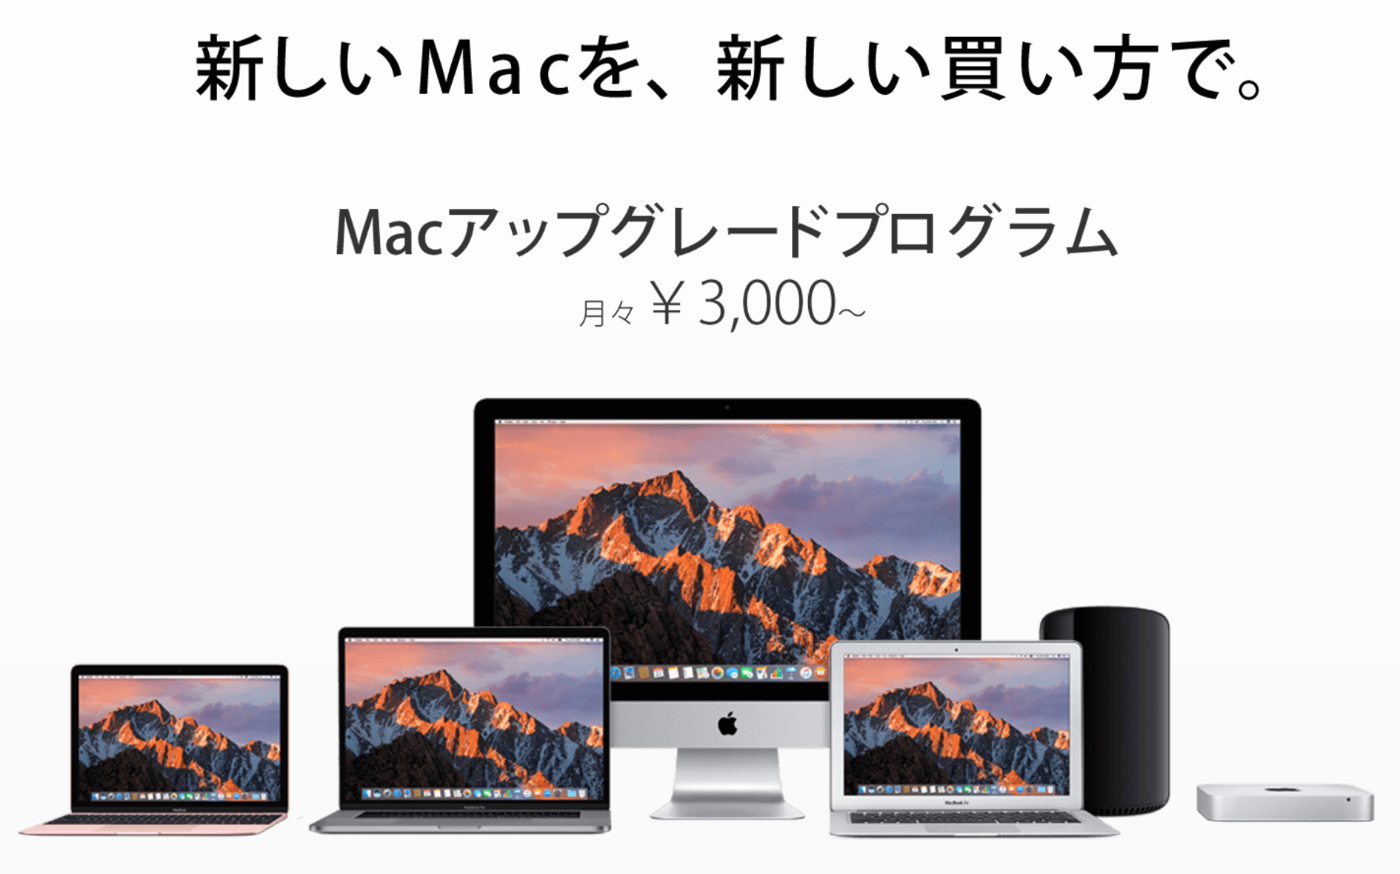 Macアップグレードプログラム-1